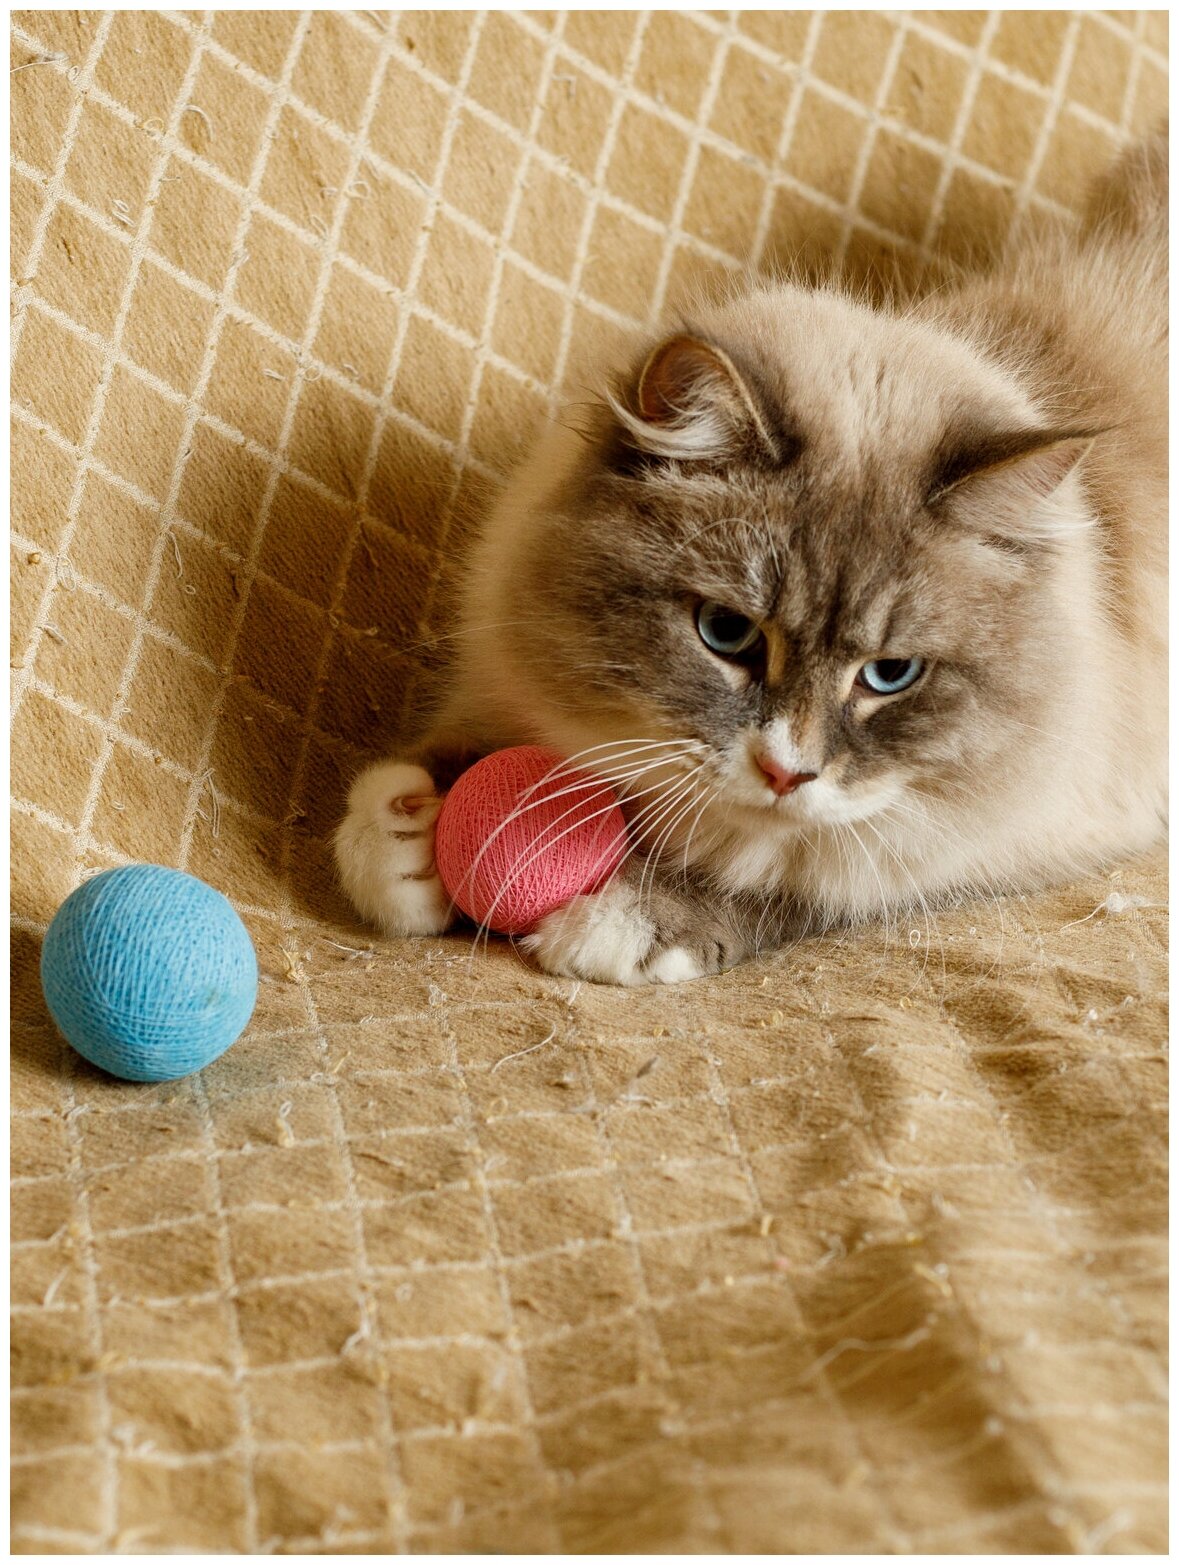 Набор игрушек для кошек и котят Japan Premium Pet клубок из безопасных хлопковых ниток со смещенным центром тяжести и колокольчиком внутри. Разноцветный